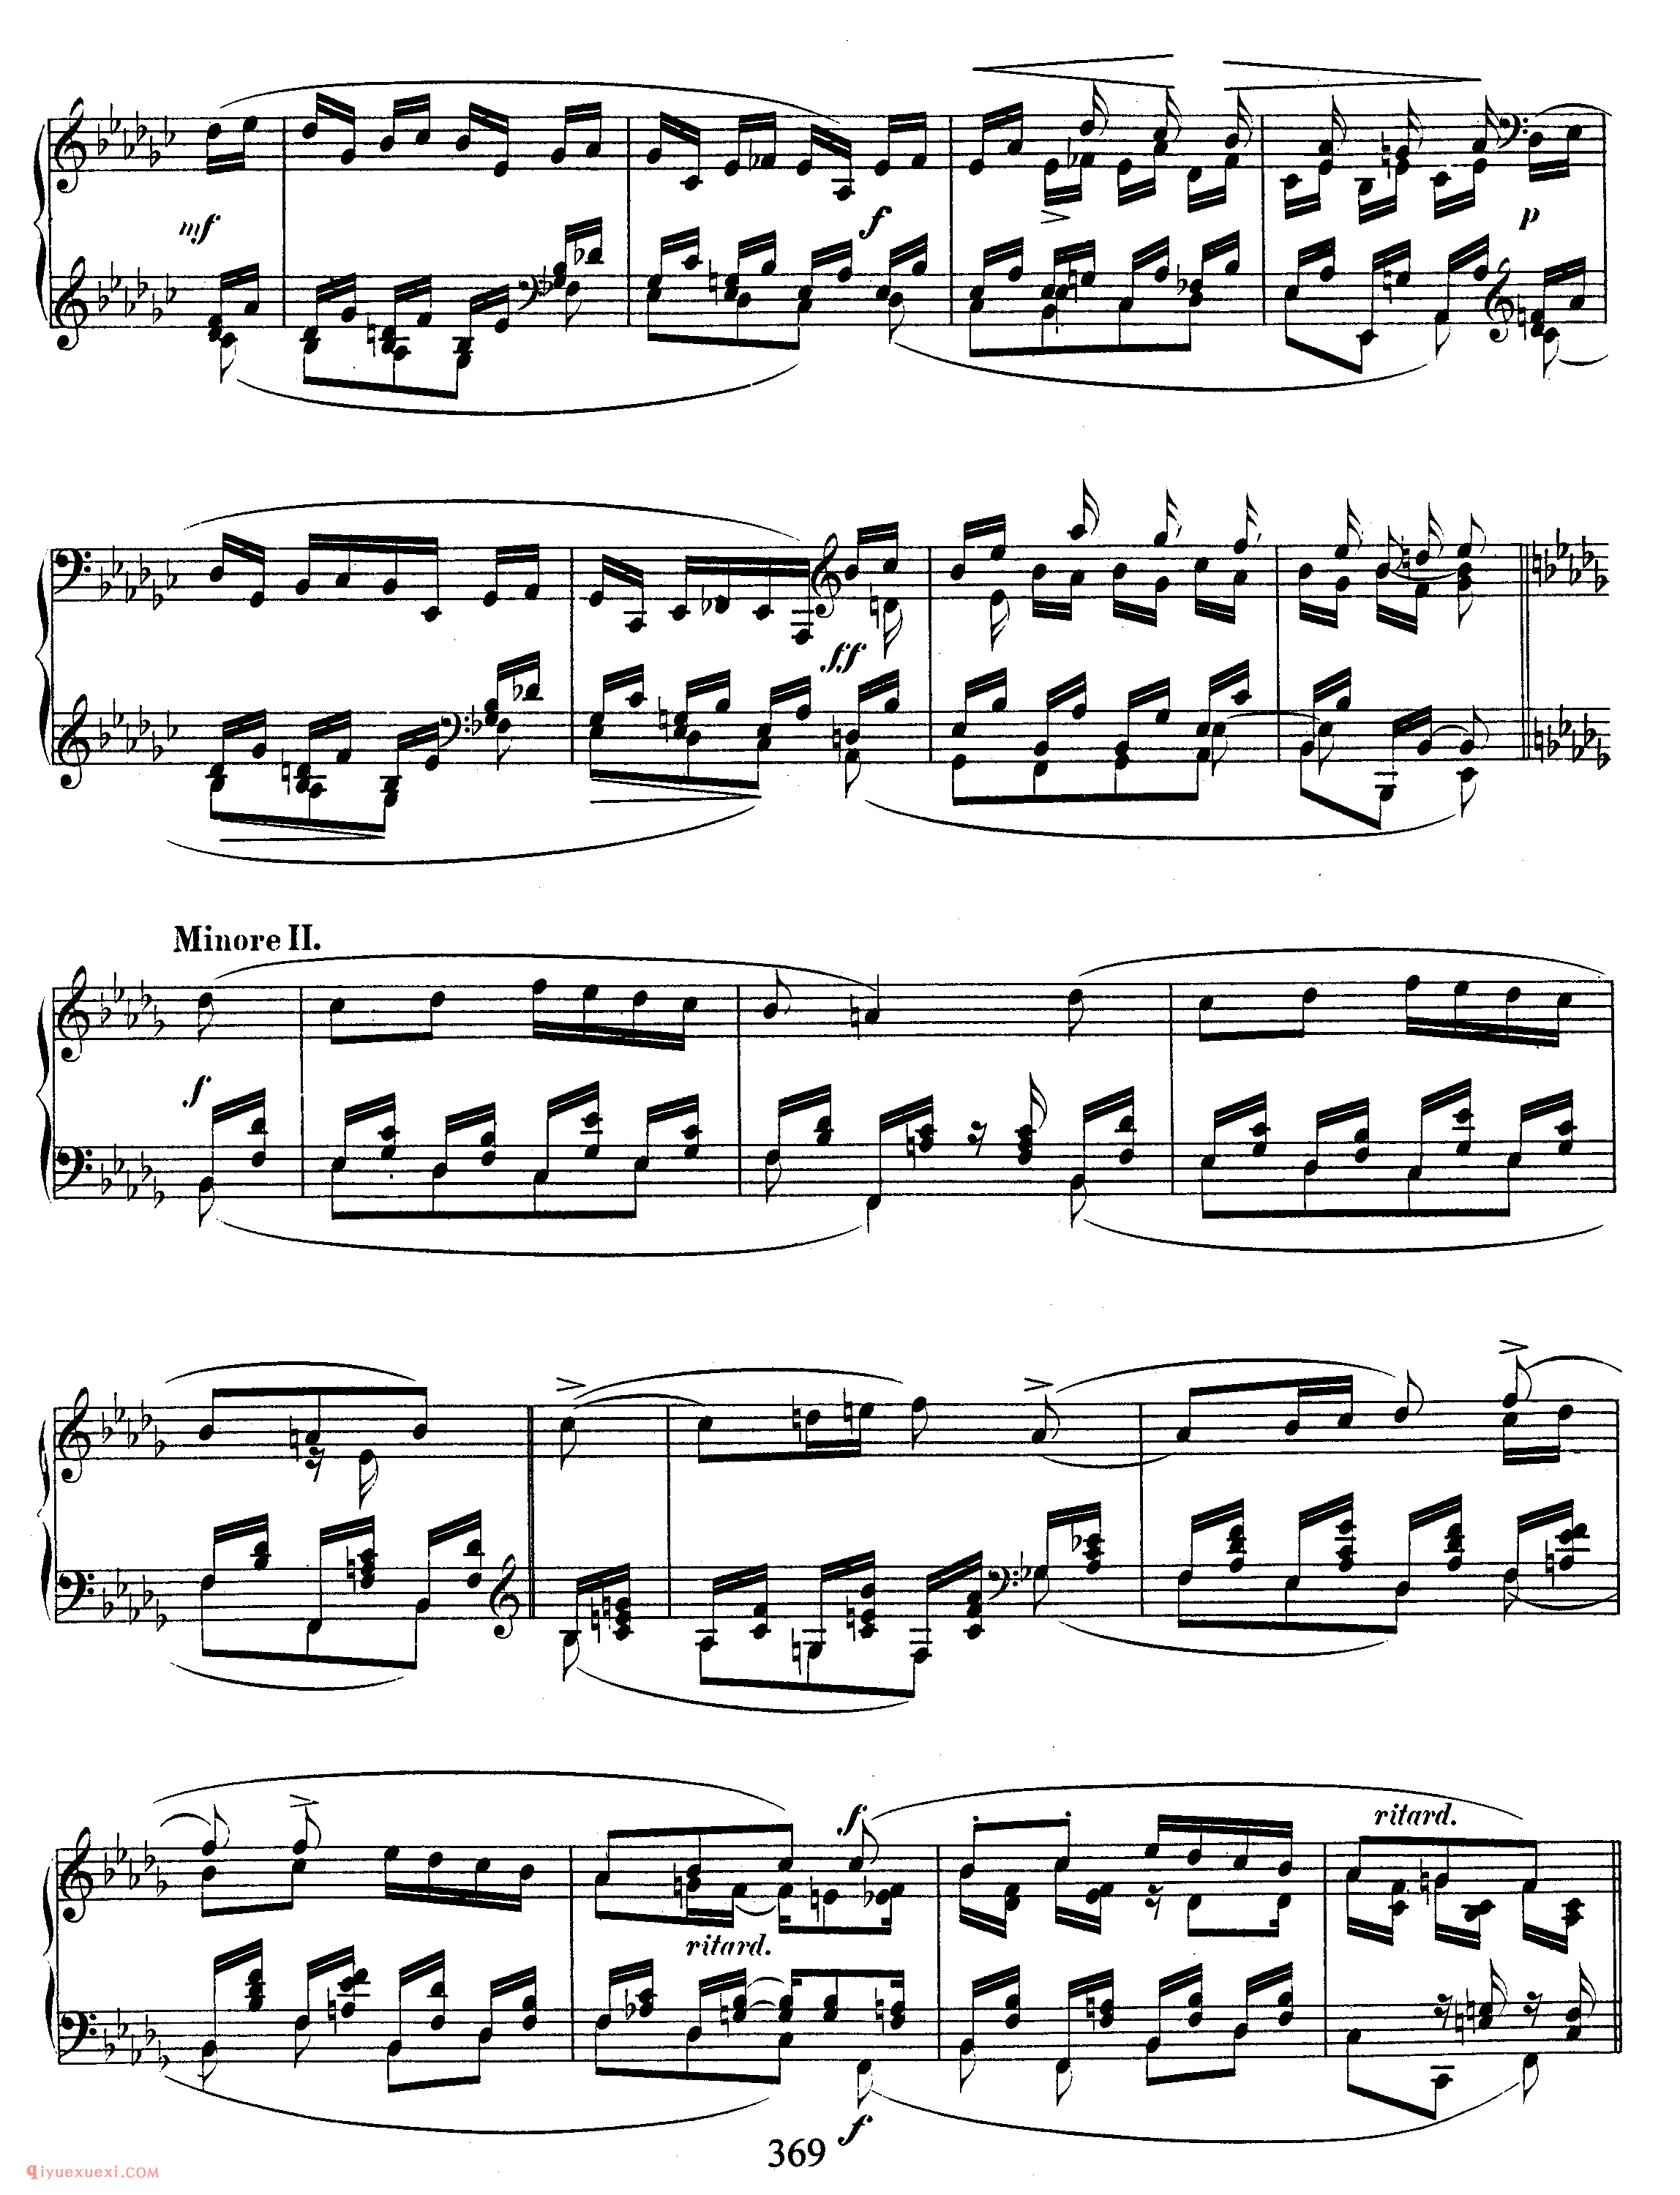 舒曼《花之歌》作品19_Schumann Blumenstuck Op.19_舒曼钢琴谱